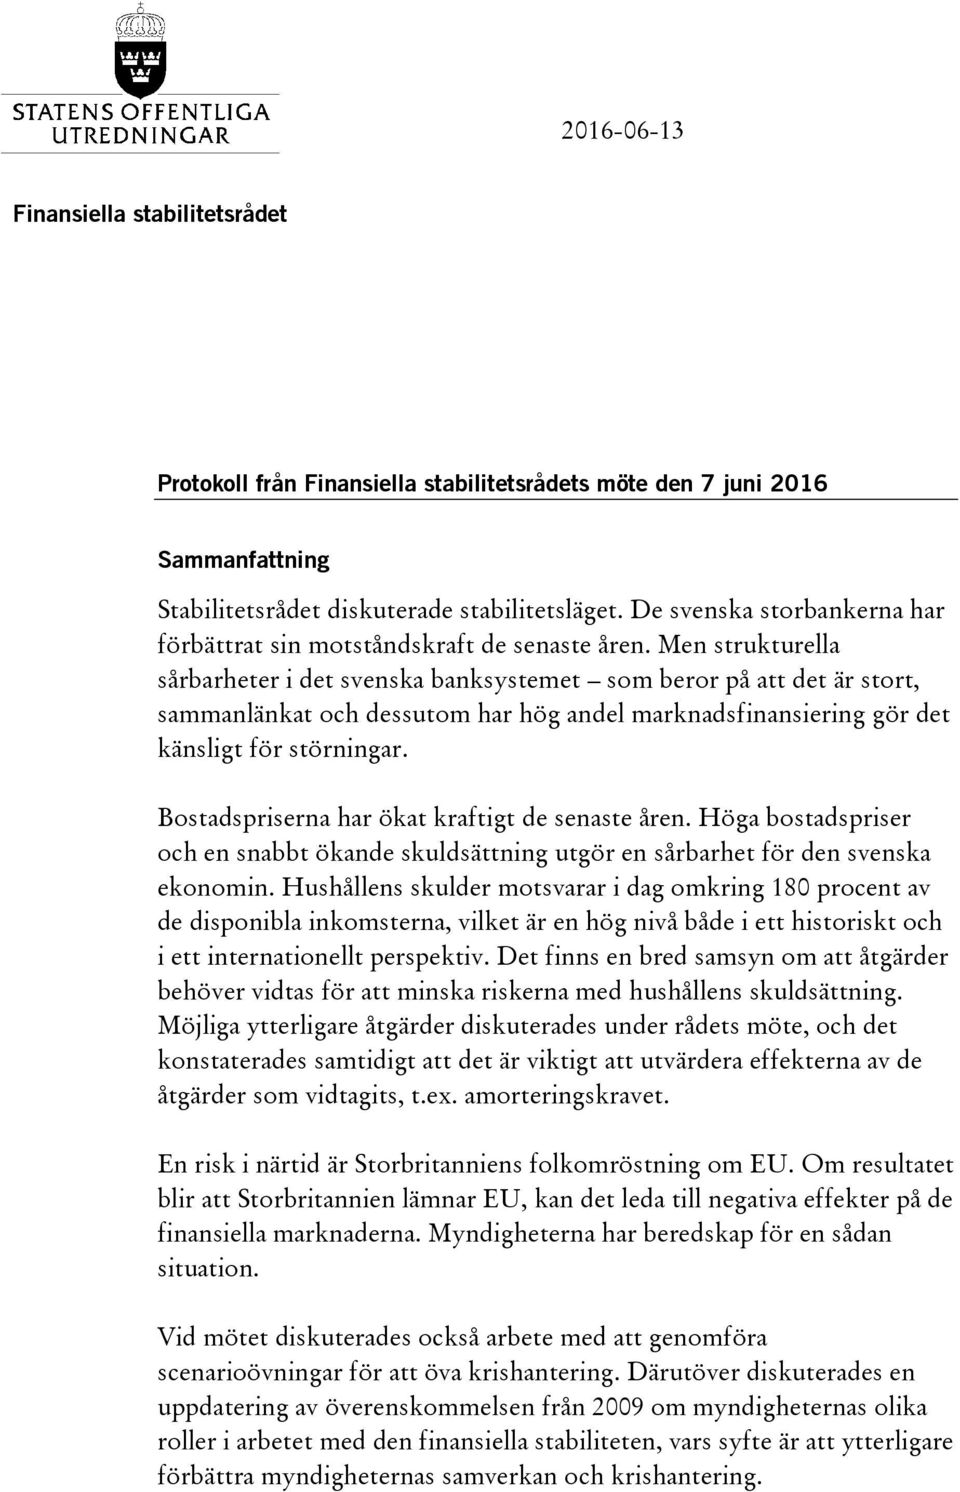 Men strukturella sårbarheter i det svenska banksystemet som beror på att det är stort, sammanlänkat och dessutom har hög andel marknadsfinansiering gör det känsligt för störningar.